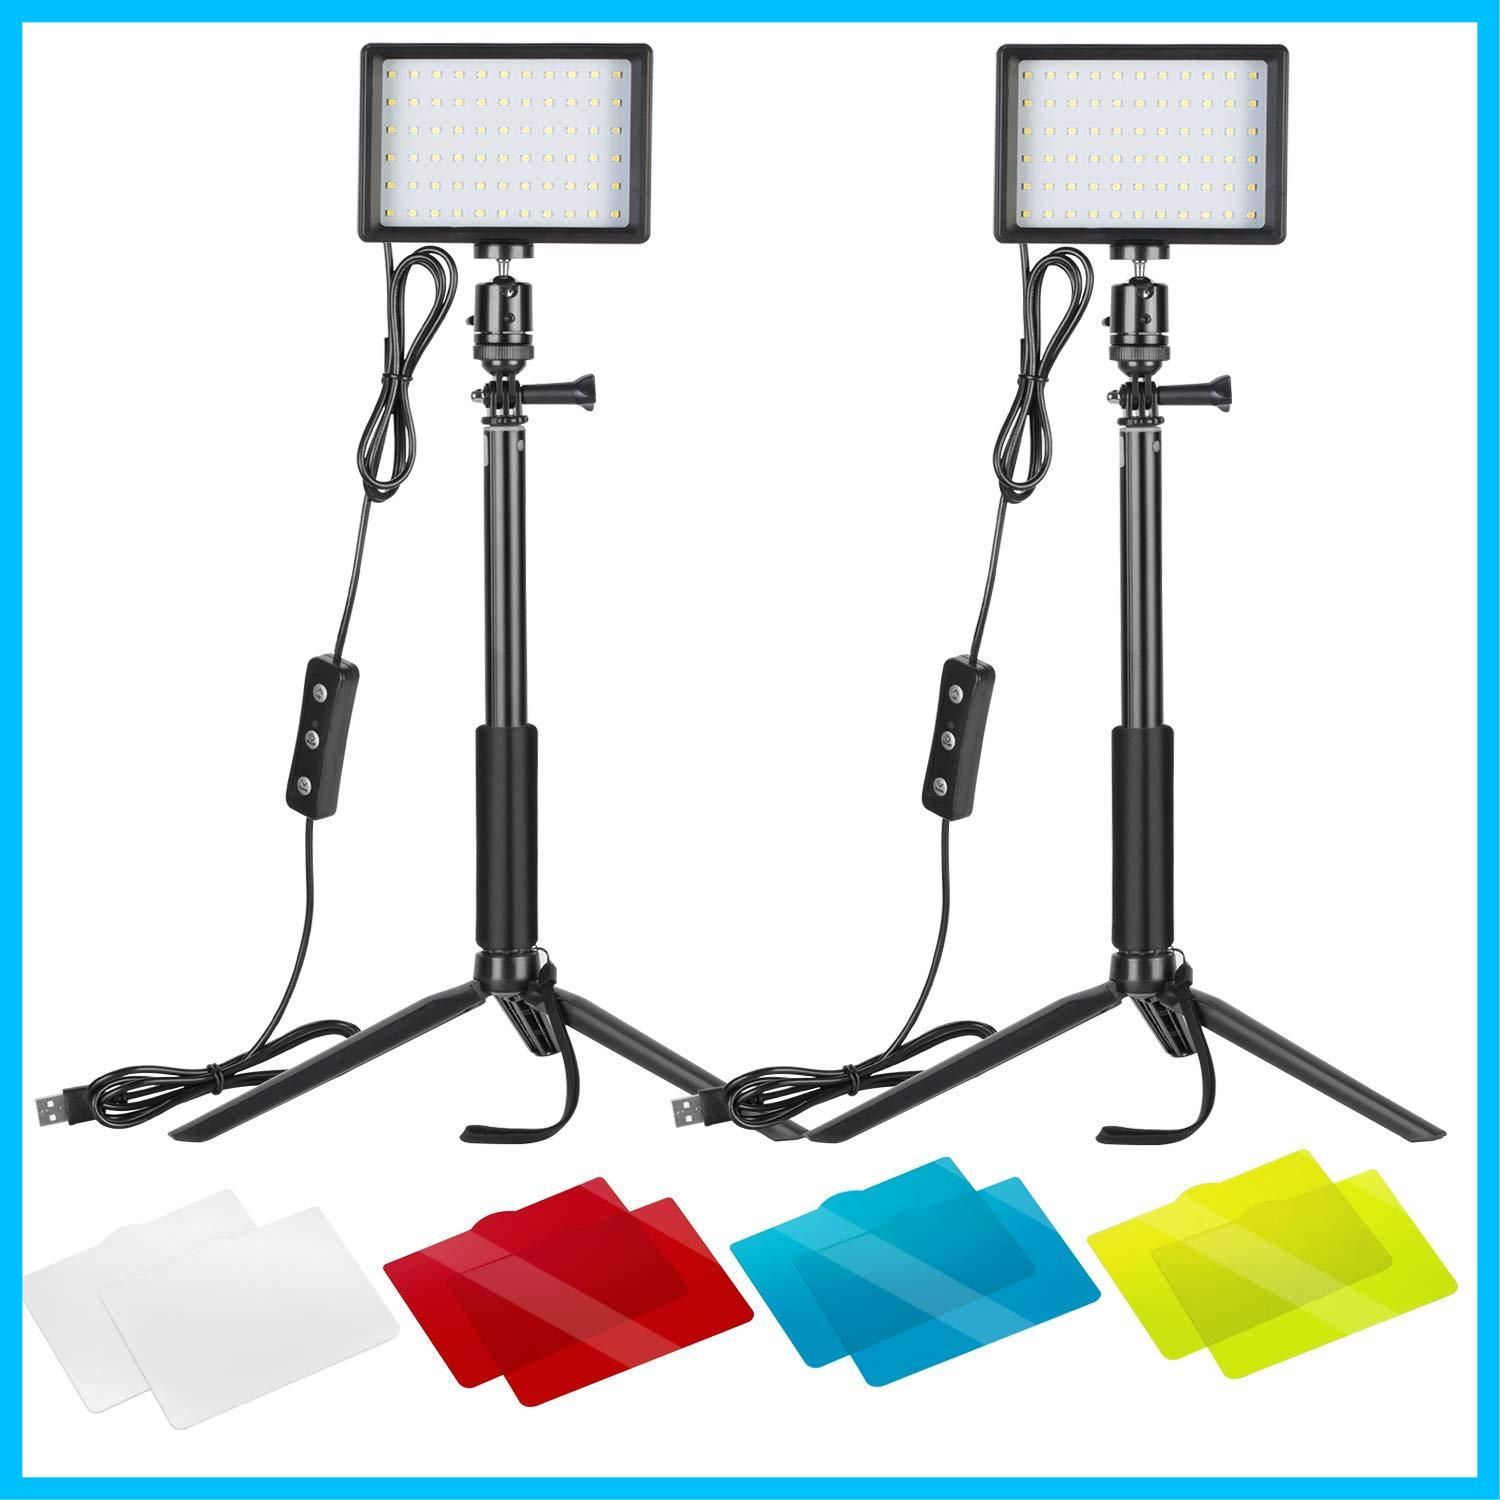 【新着商品】NEEWER 2パック LEDビデオライト 撮影用 卓上小型 調光可能5600K USB照明 カラーフィルターと三脚スタンド付き  ローアングル撮影/生放送/ズーム/ビデオ会議照明/YouTube撮影に適用